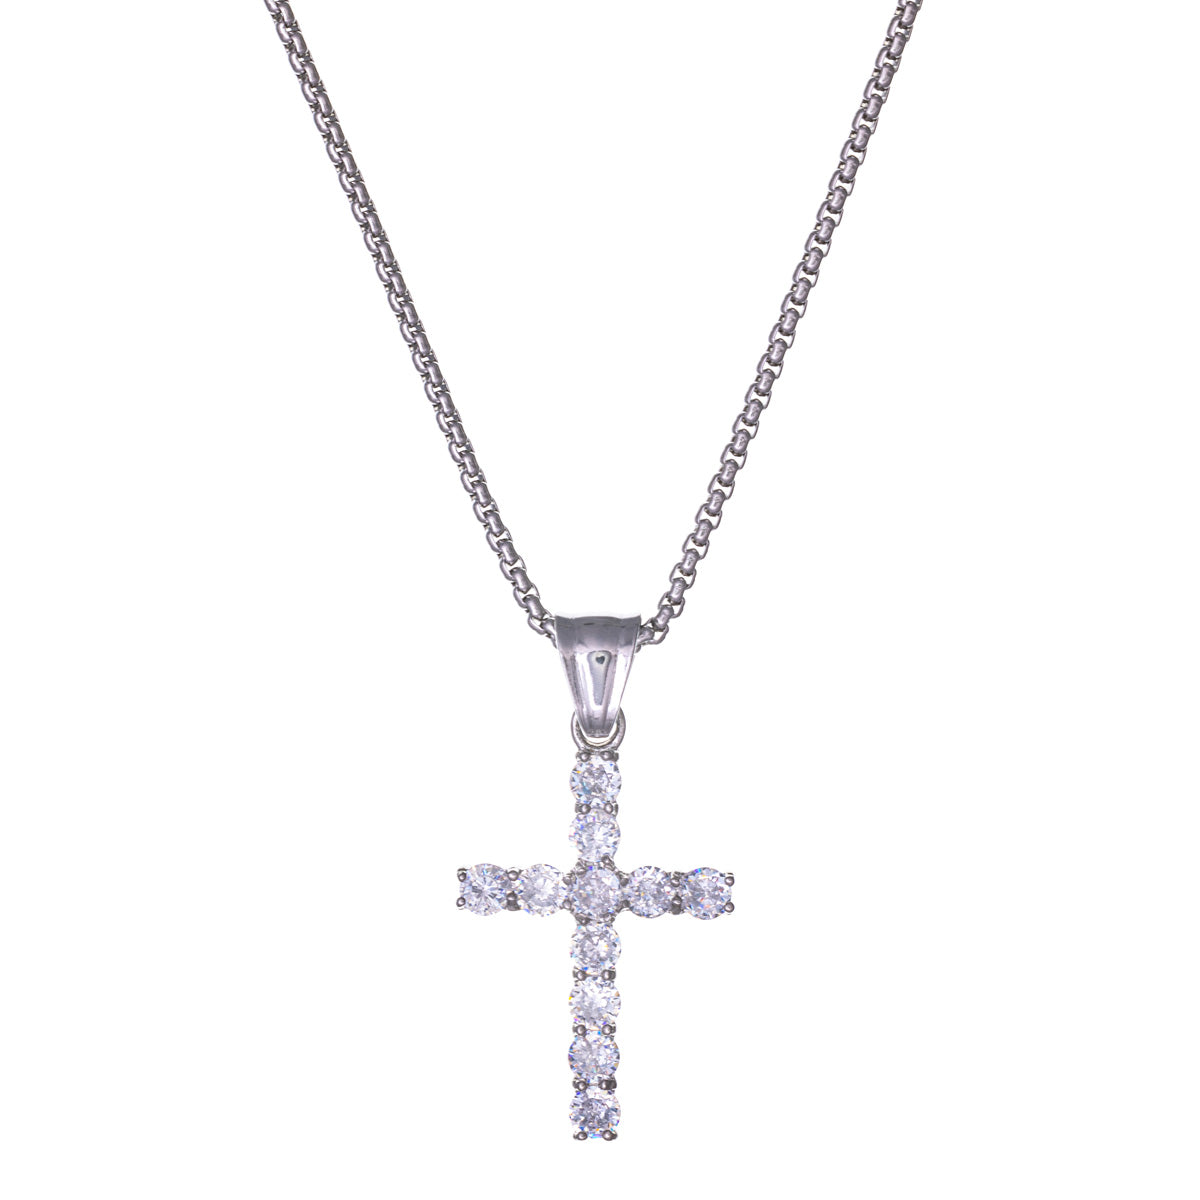 Zirconia cross pendant steel necklace 59cm (Steel 316L)